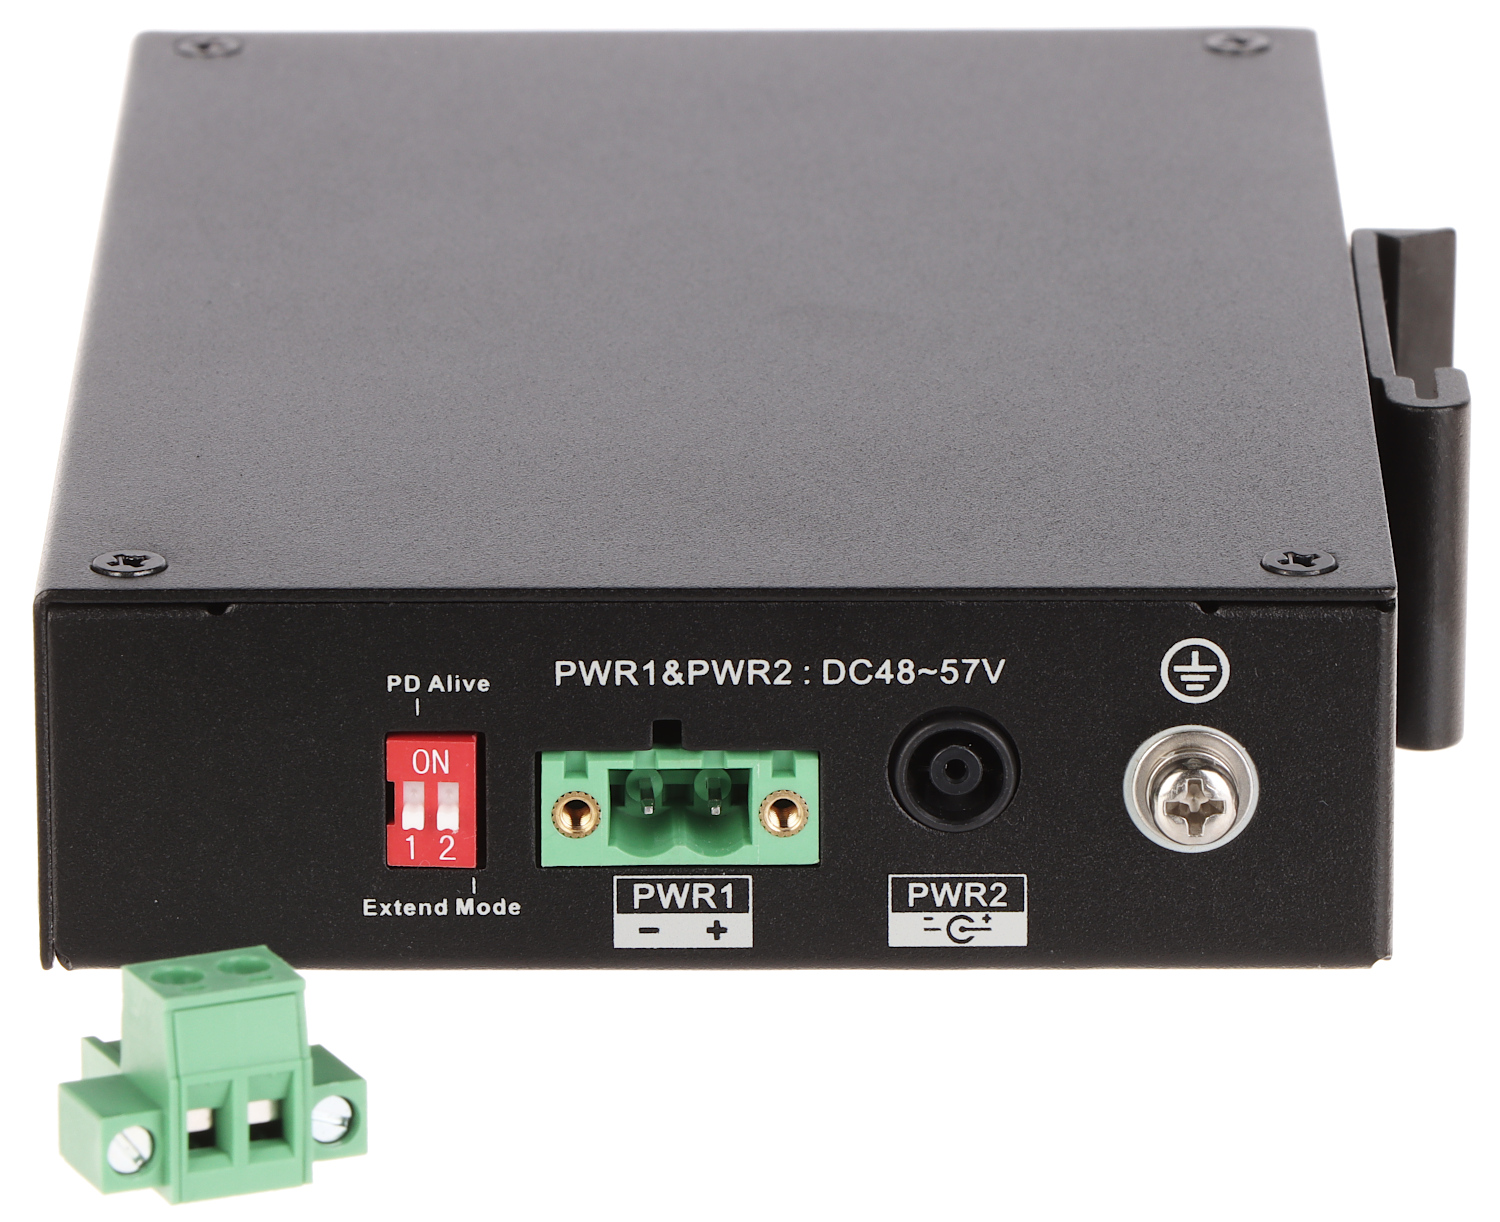 Dahua Switch PoE DH-PFS3106-4ET-60-V2 4-port + 1 RJ45 + 1 SFP